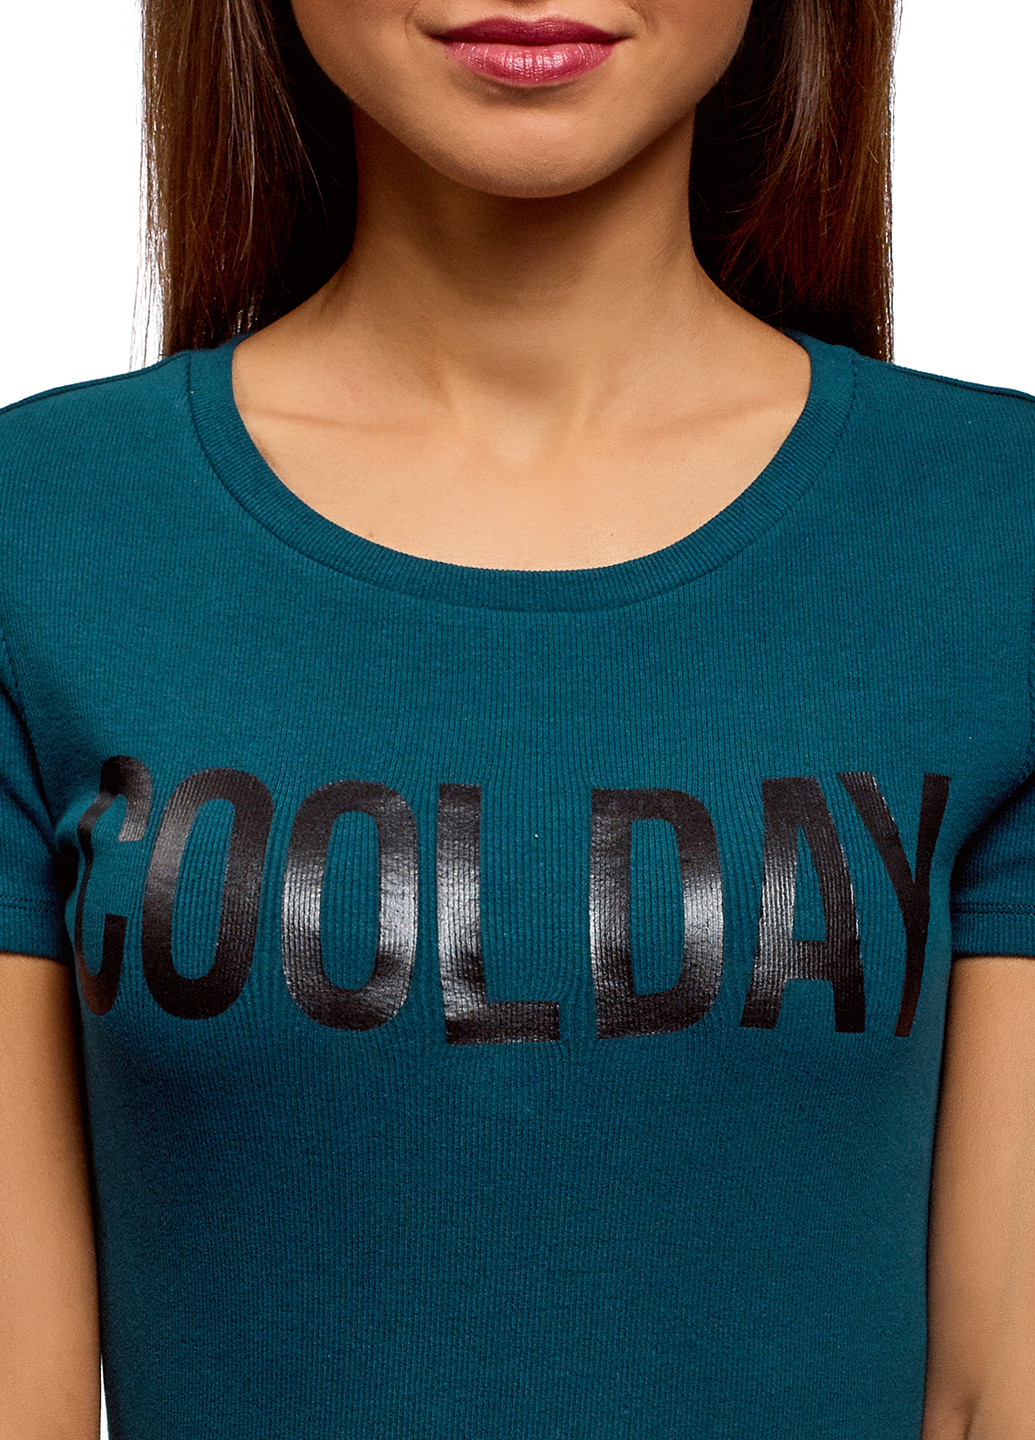 Синяя летняя футболка Oodji